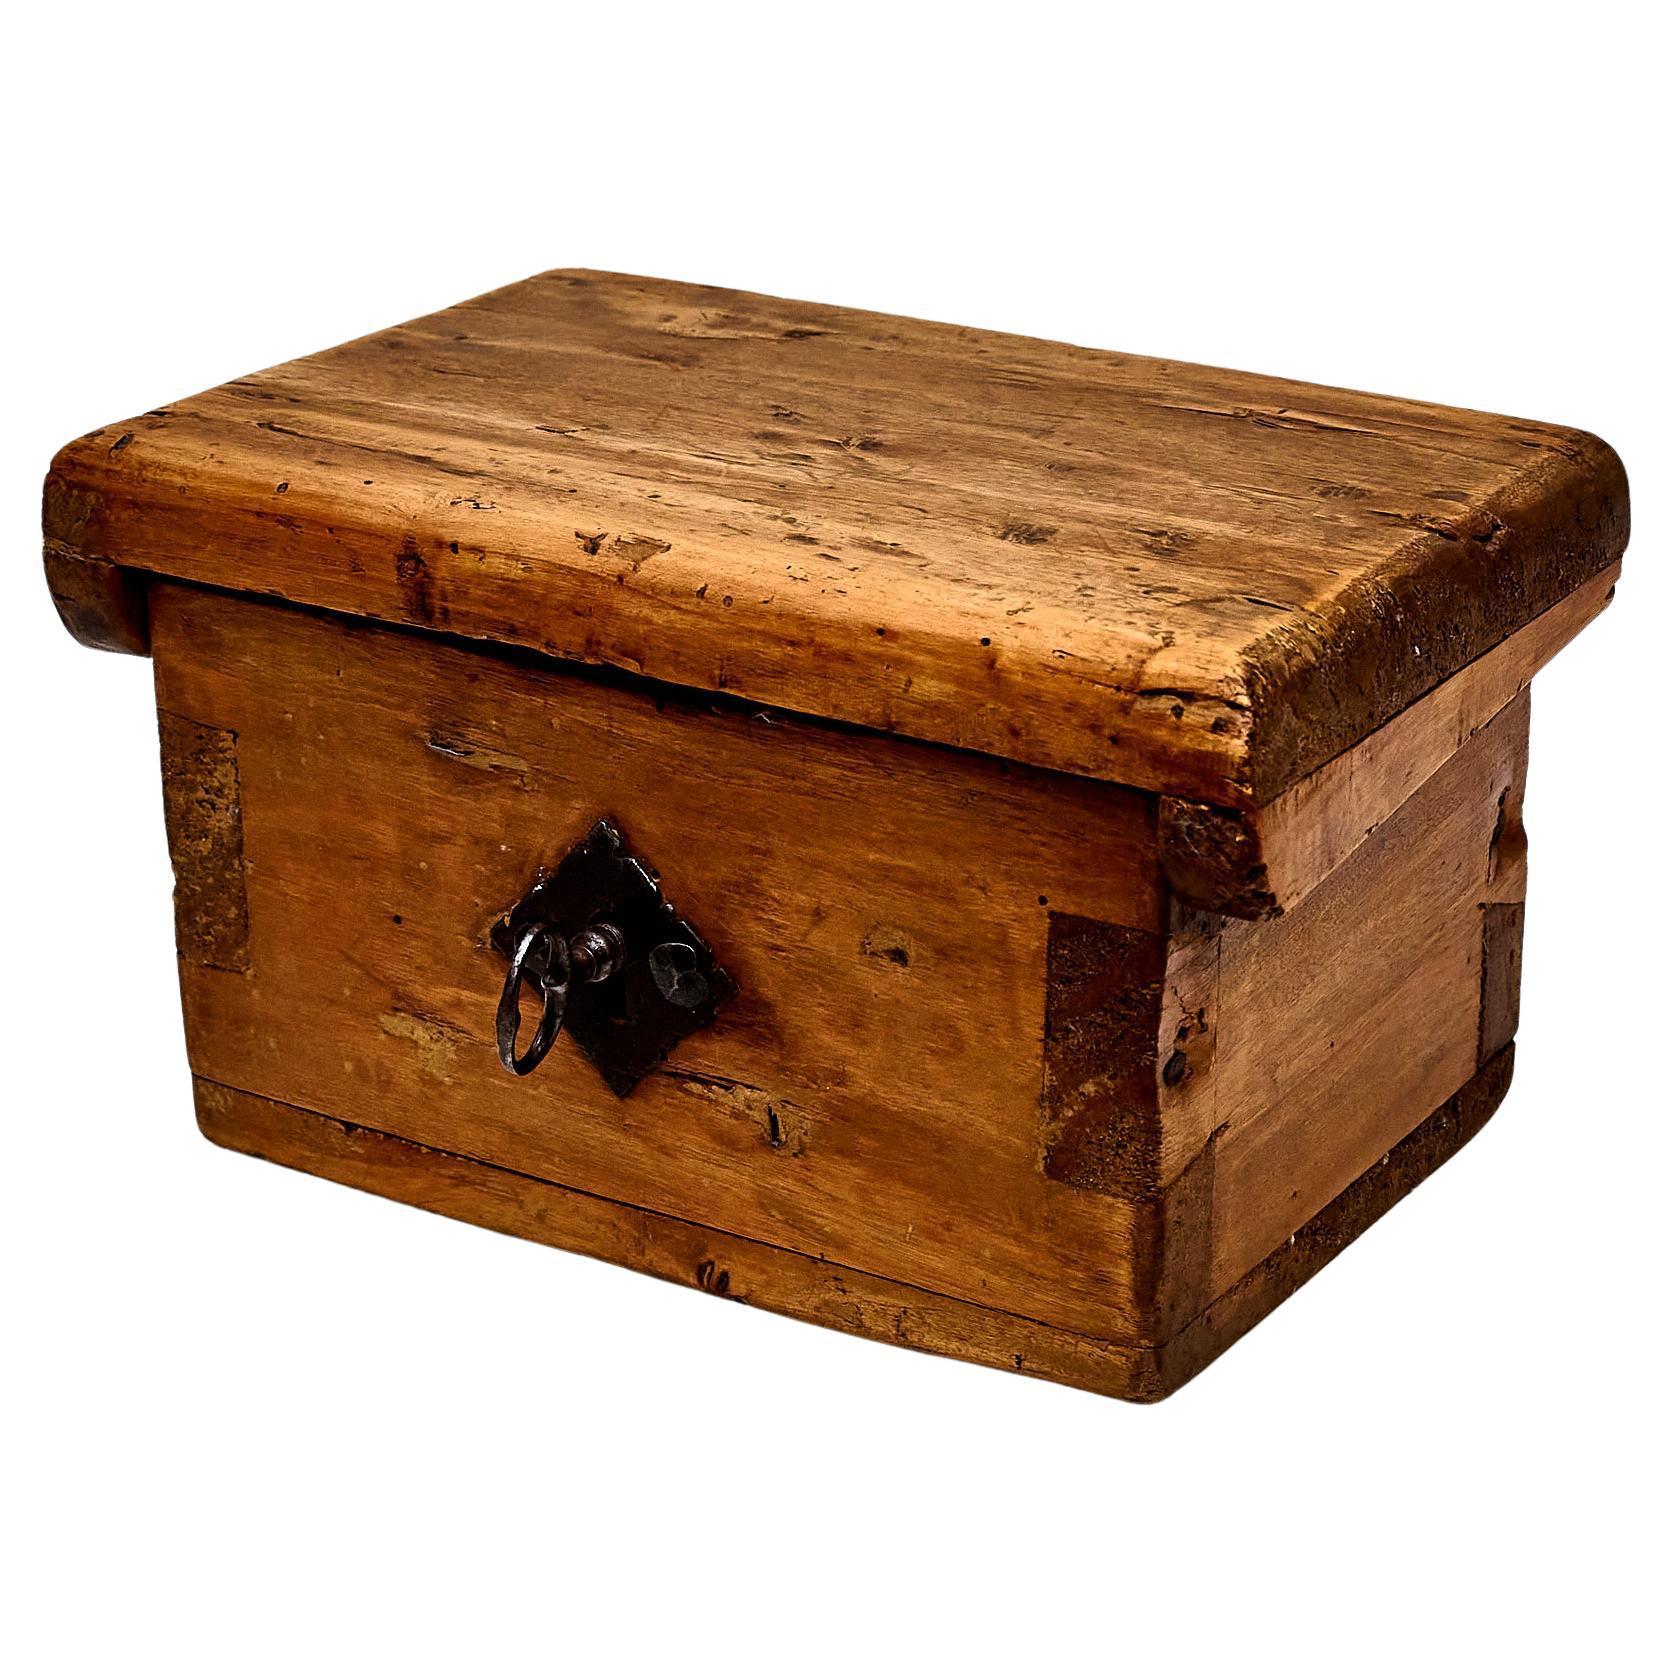 Rustikale Holzbox mit Schlüsselschloss.

Hergestellt in Frankreich, um 1930.

In ursprünglichem Zustand mit geringen Gebrauchsspuren, die dem Alter und dem Gebrauch entsprechen, wobei eine schöne Patina erhalten bleibt.

MATERIALIEN: 
Holz,